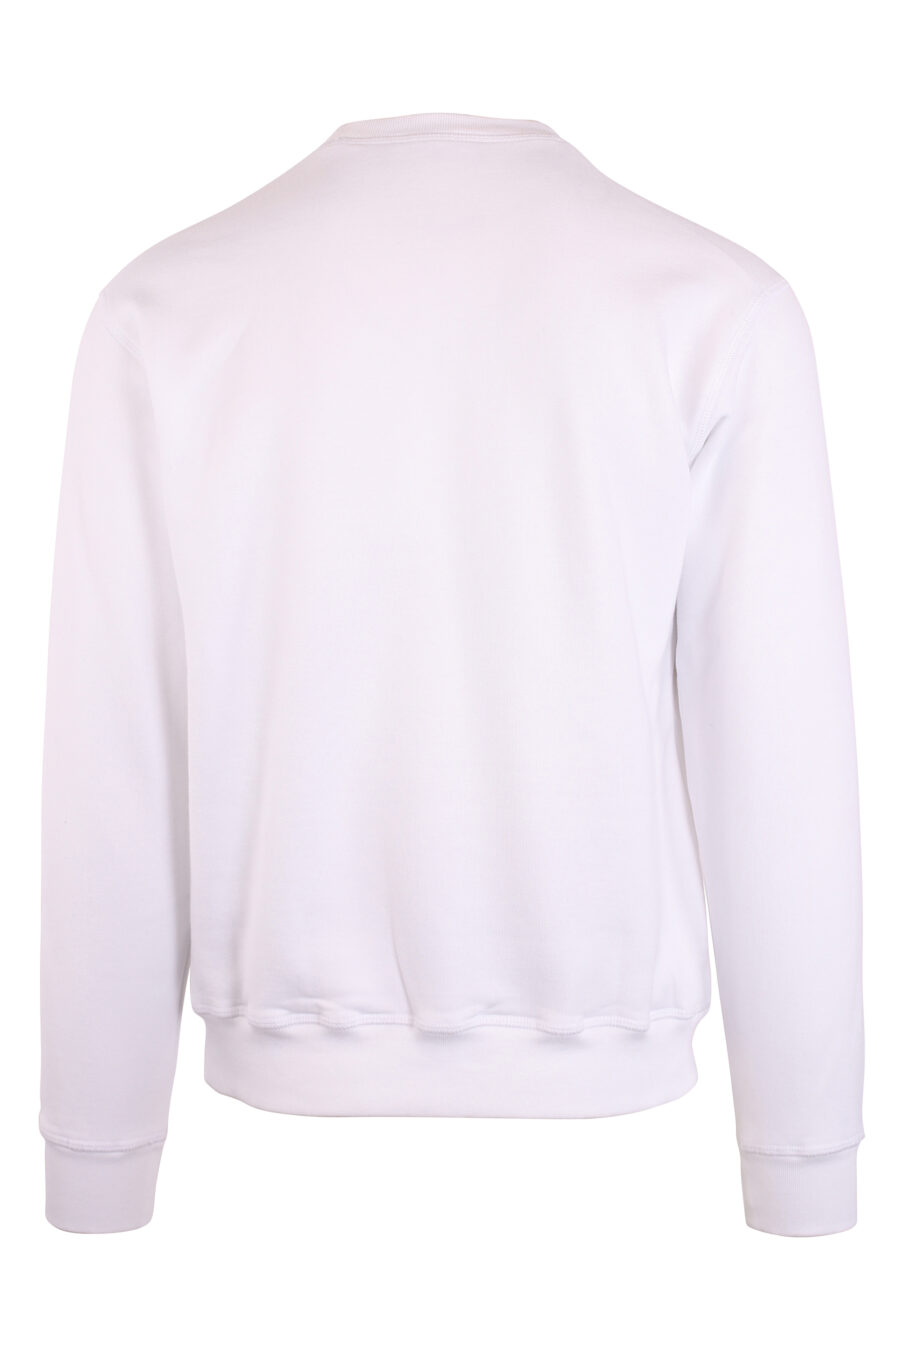 Weißes Sweatshirt mit Palmenaufdruck im Sonnenuntergang - IMG 8901